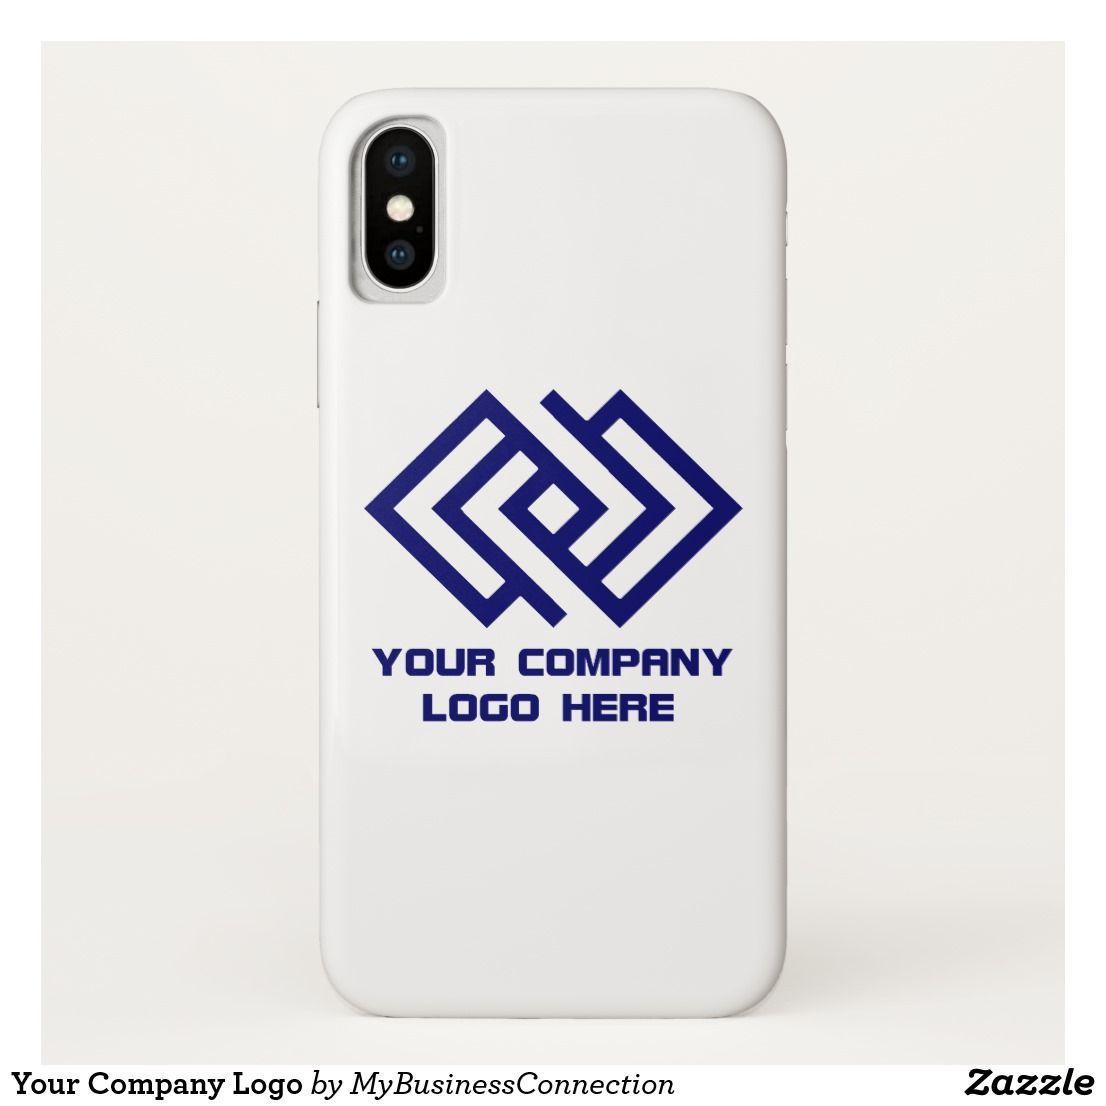 Phone Cases Company Logo - Your Company Logo iPhone X Case in 2019 | iPhone X Cases | Iphone ...